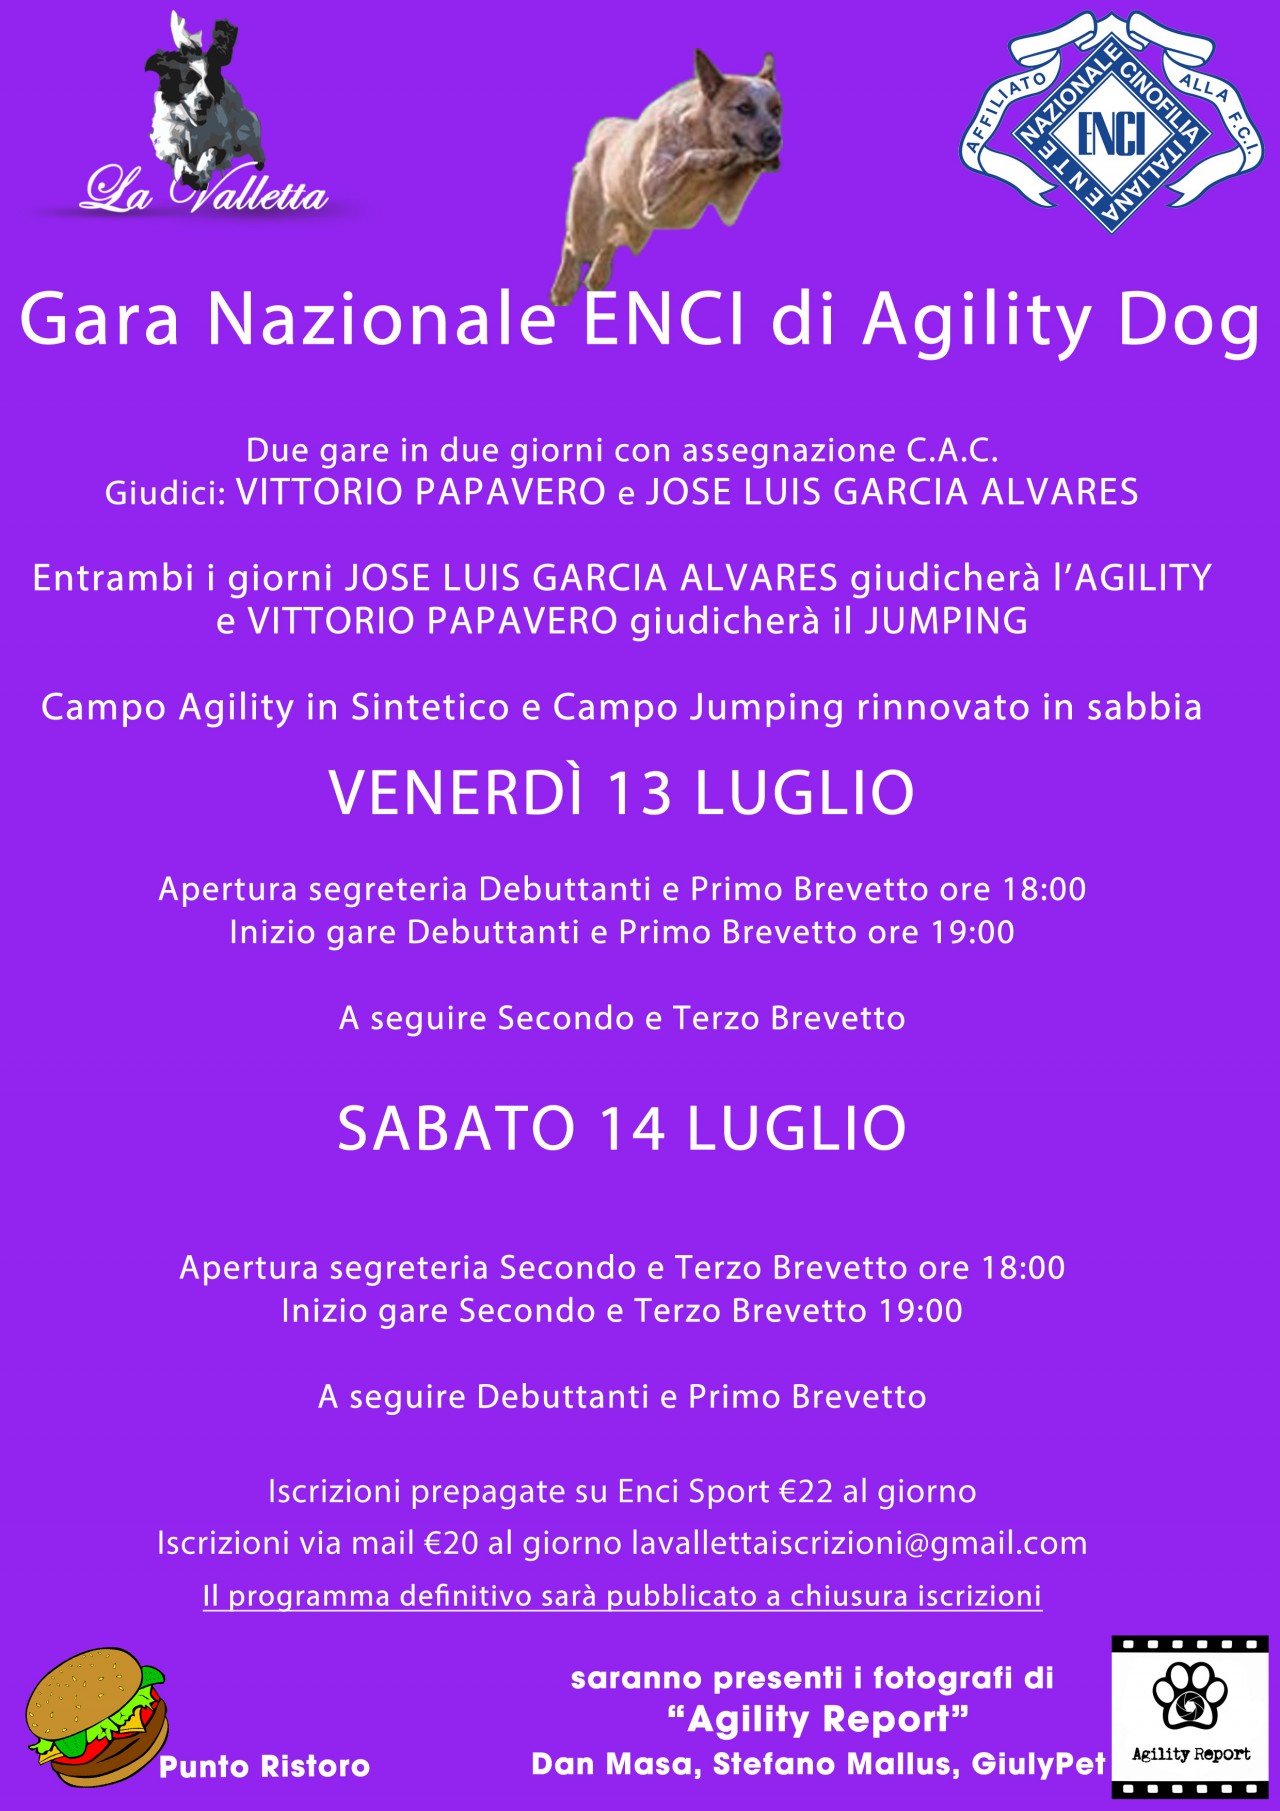 Gara Nazionale di  Agility dog in Notturna 14 luglio 2018